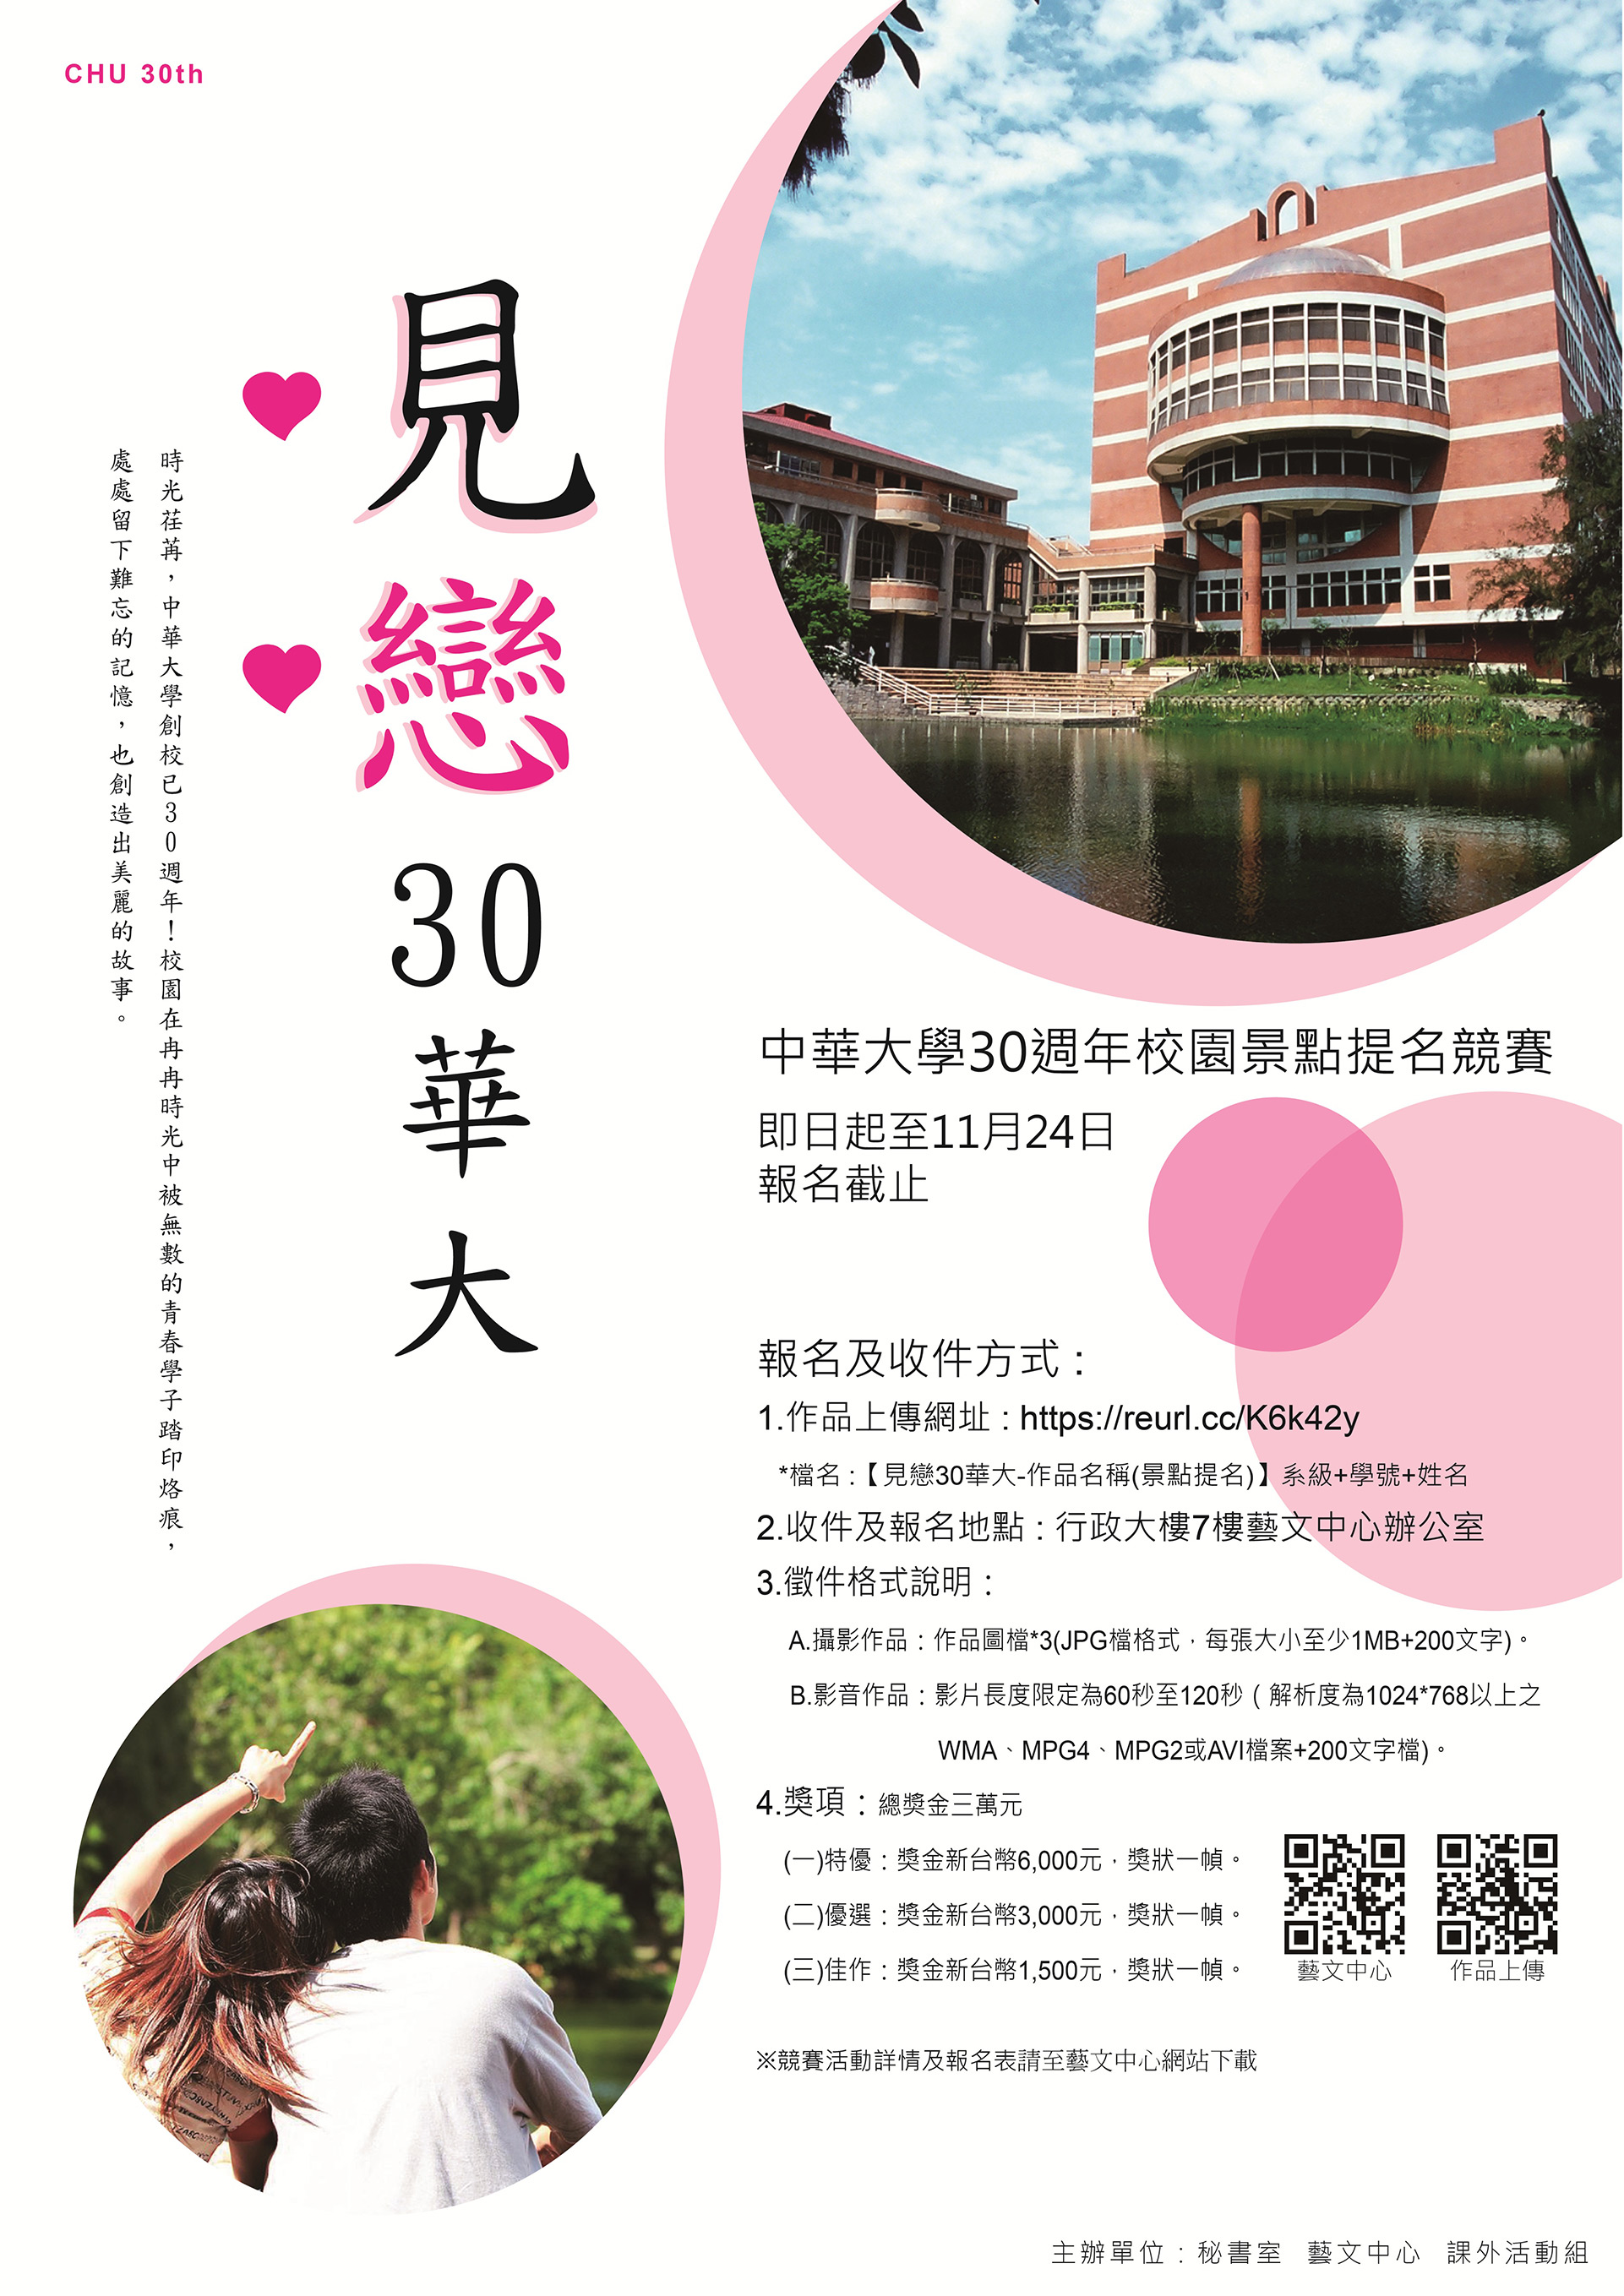 中華大學30週年「見戀30華大」校園景點提名競賽 EDM